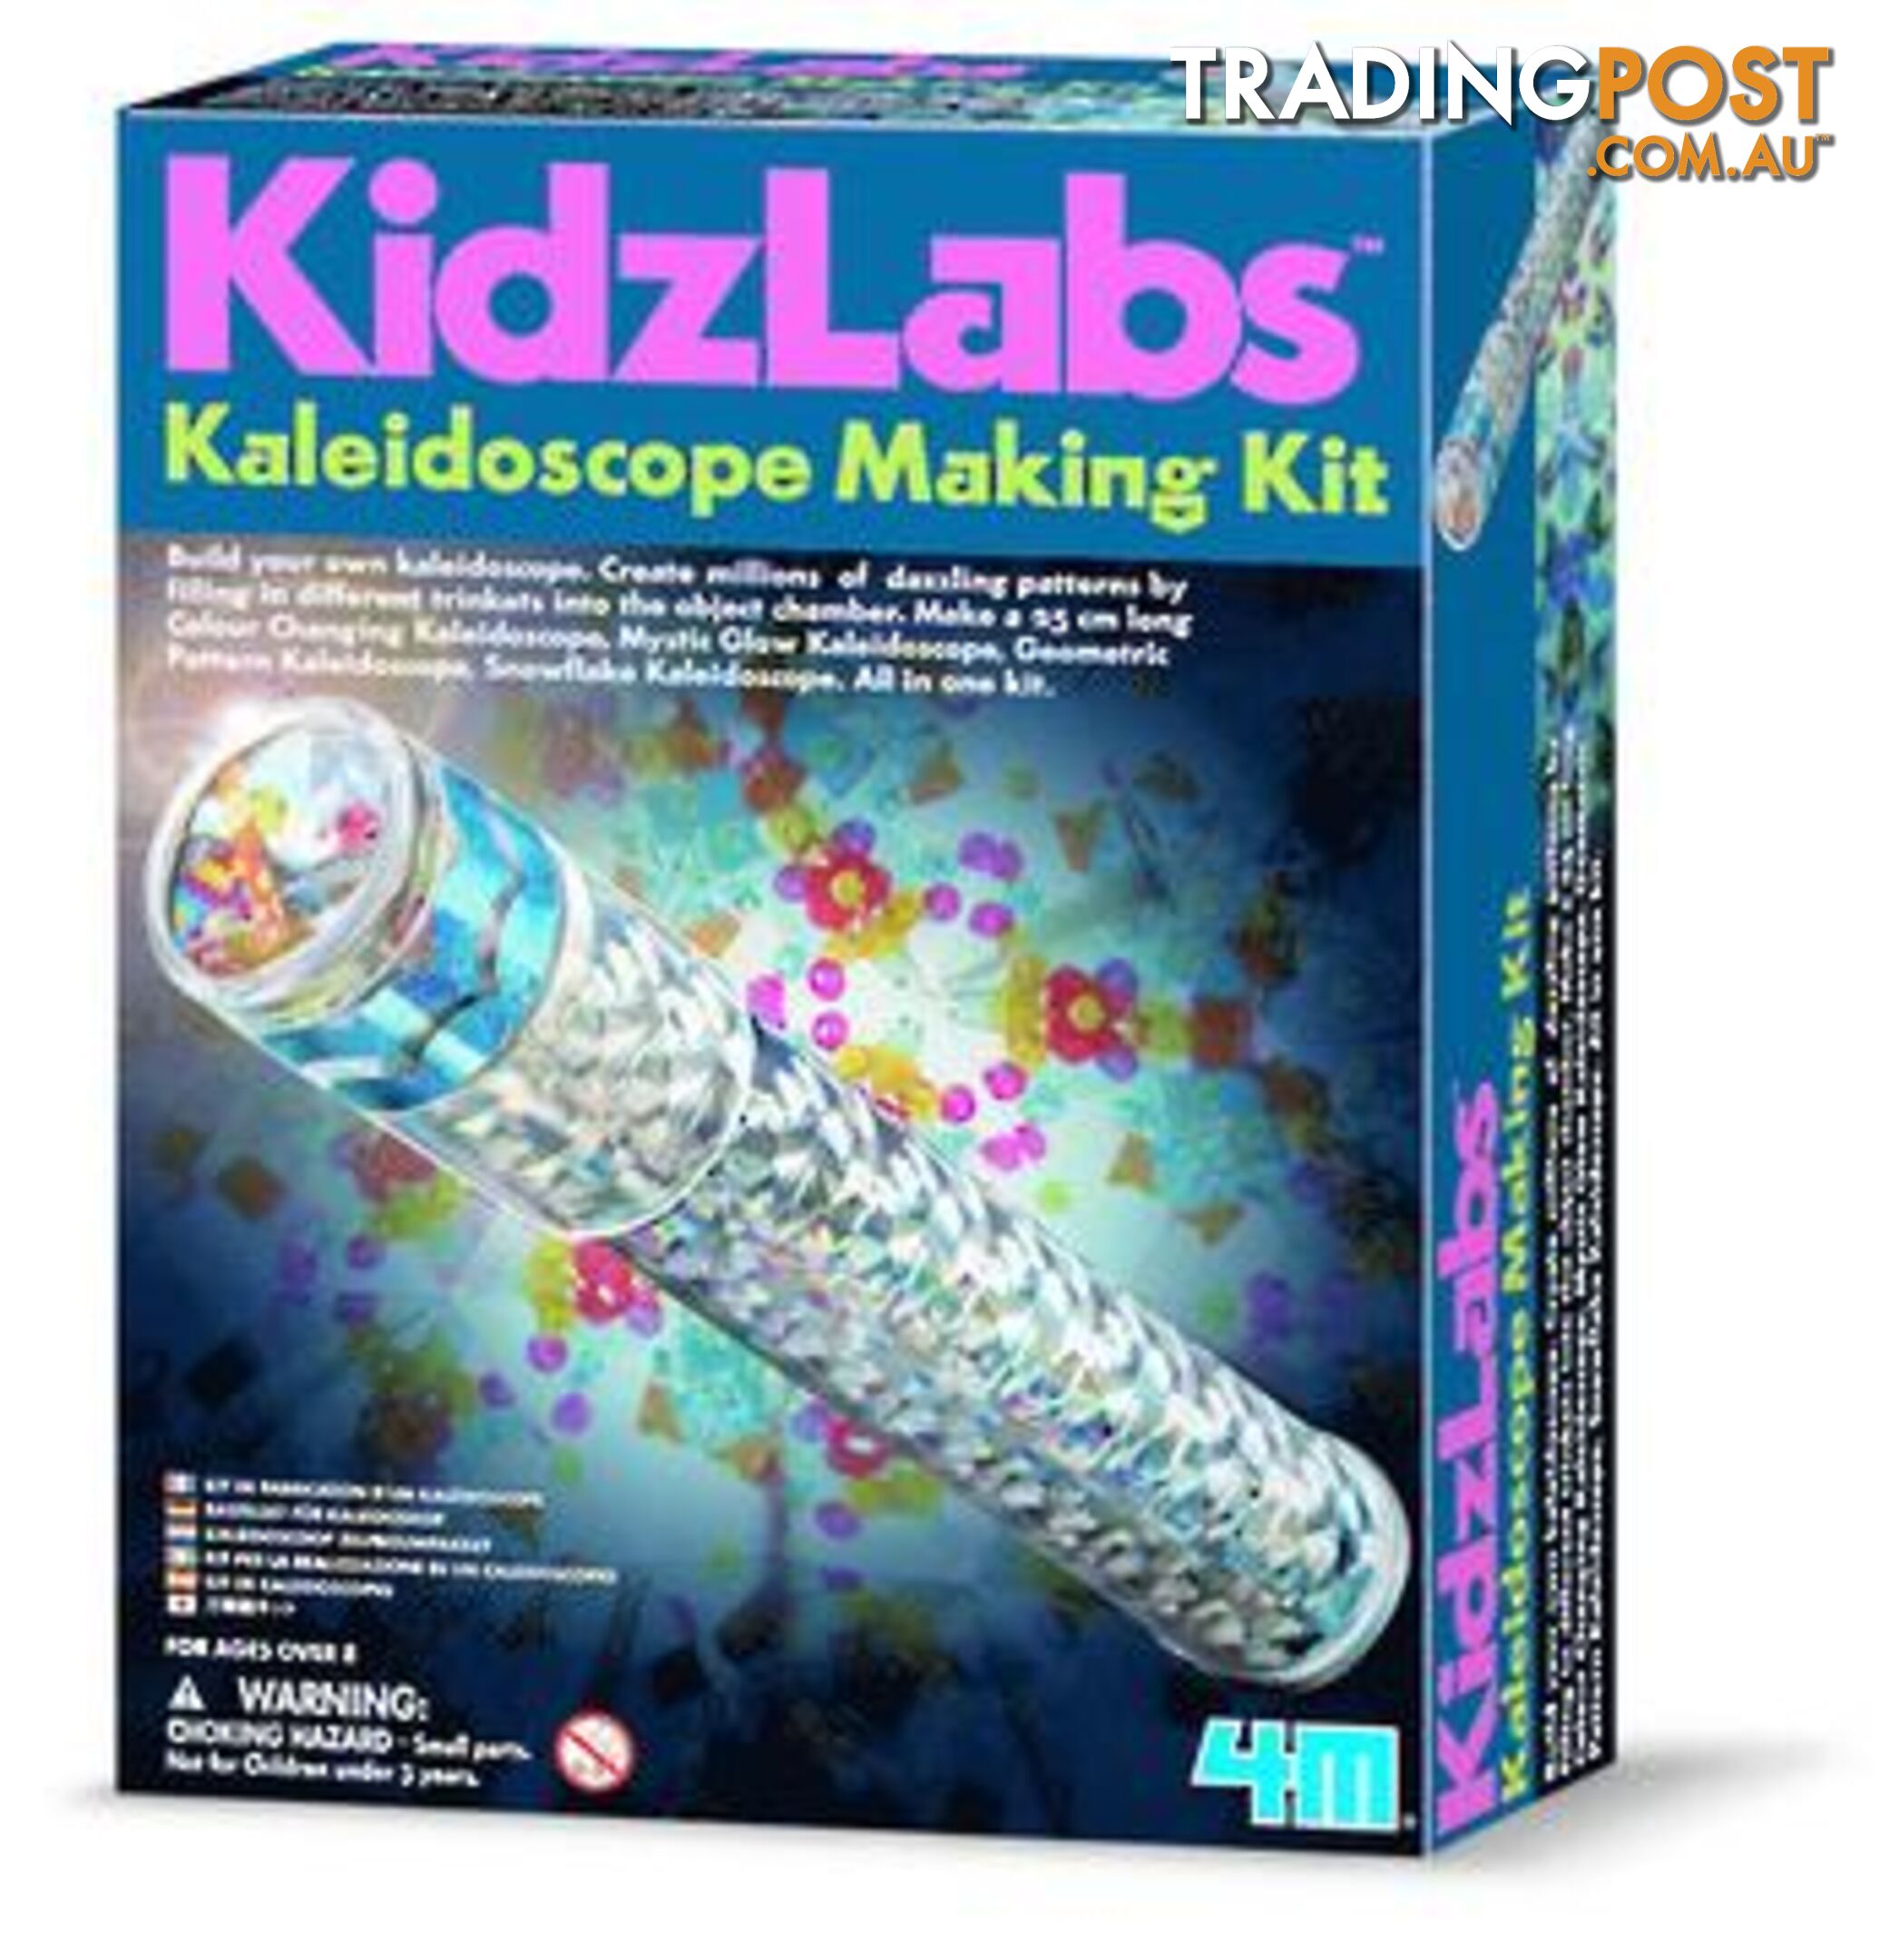 4m - Kidzlabs Kaleidoscope Making Kit Jpfsg3226 - 4893156032263